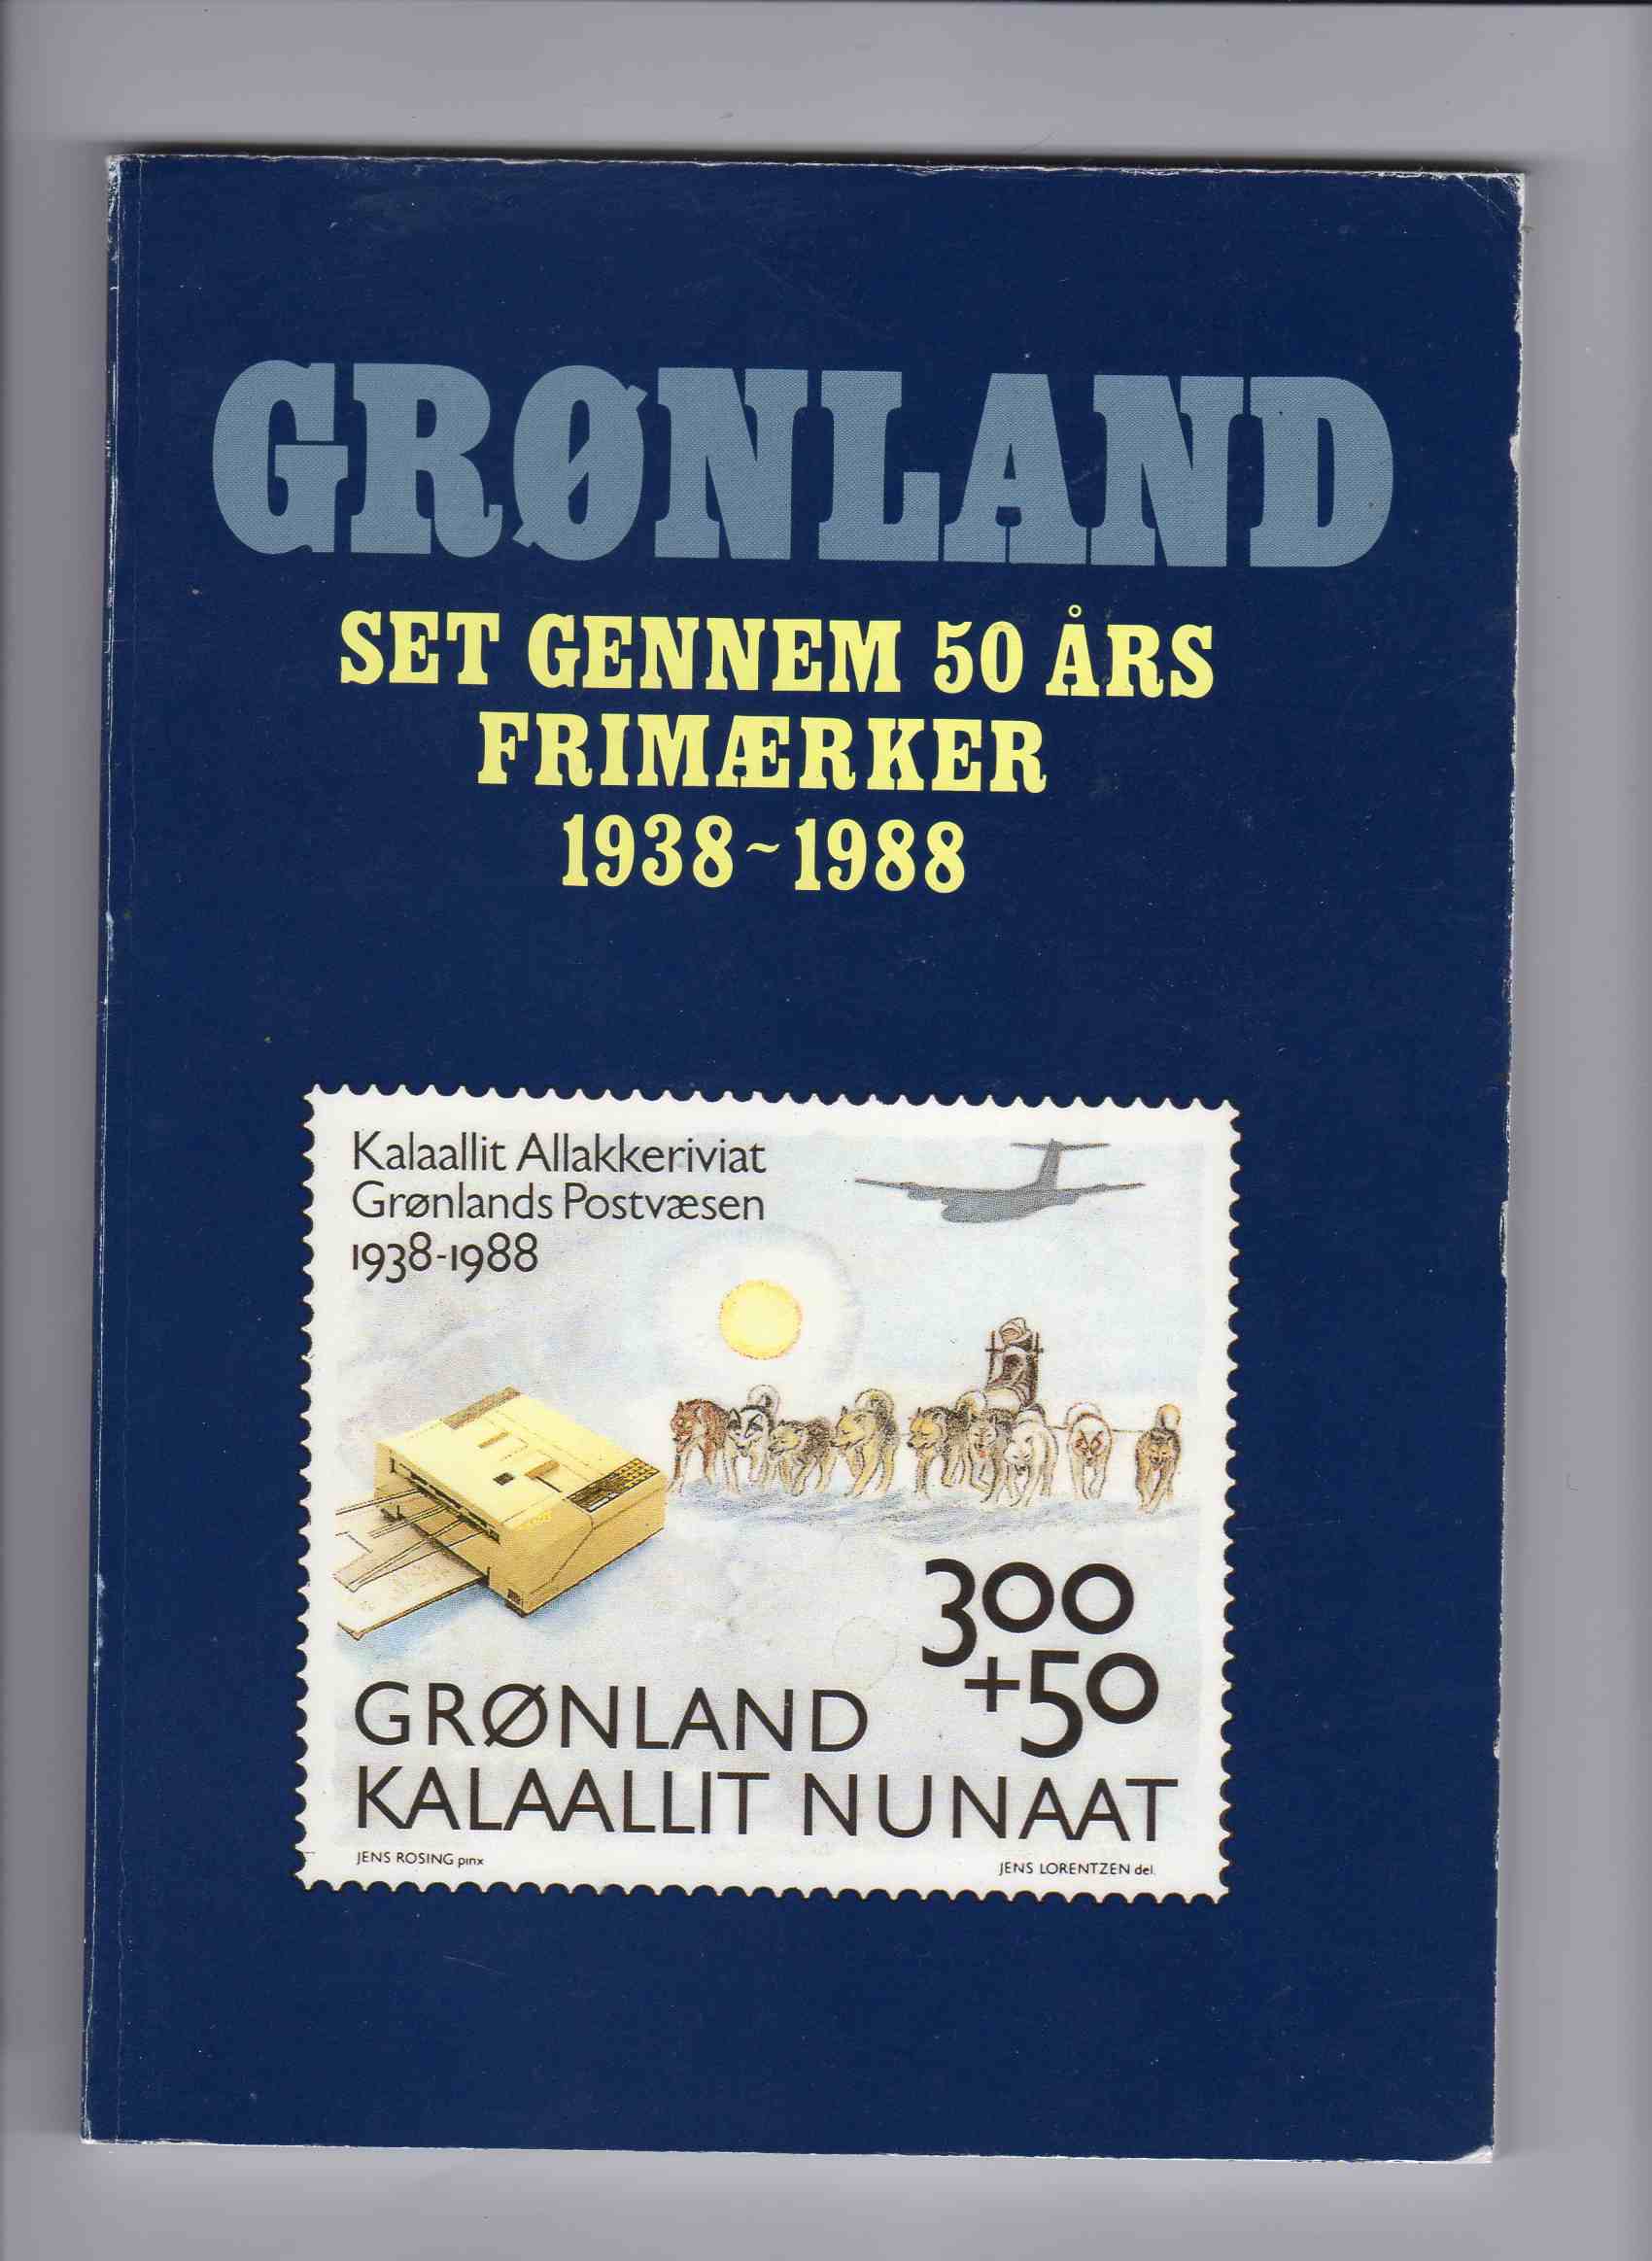 Grønland set gjennom 50 års frimærker 1938-1988 Grønlands postvæsen 1988 pen